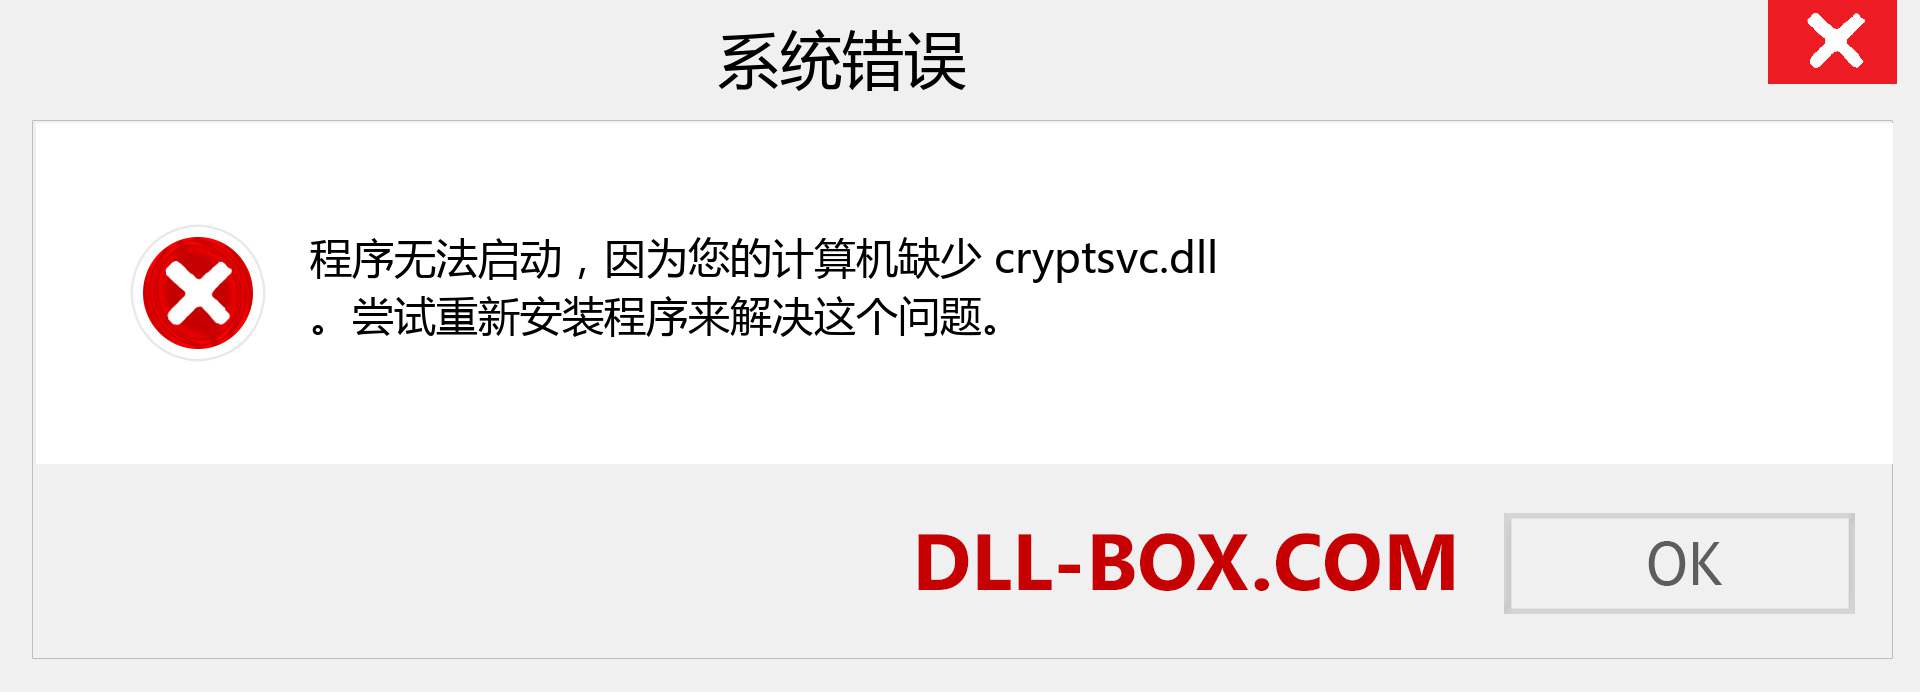 cryptsvc.dll 文件丢失？。 适用于 Windows 7、8、10 的下载 - 修复 Windows、照片、图像上的 cryptsvc dll 丢失错误